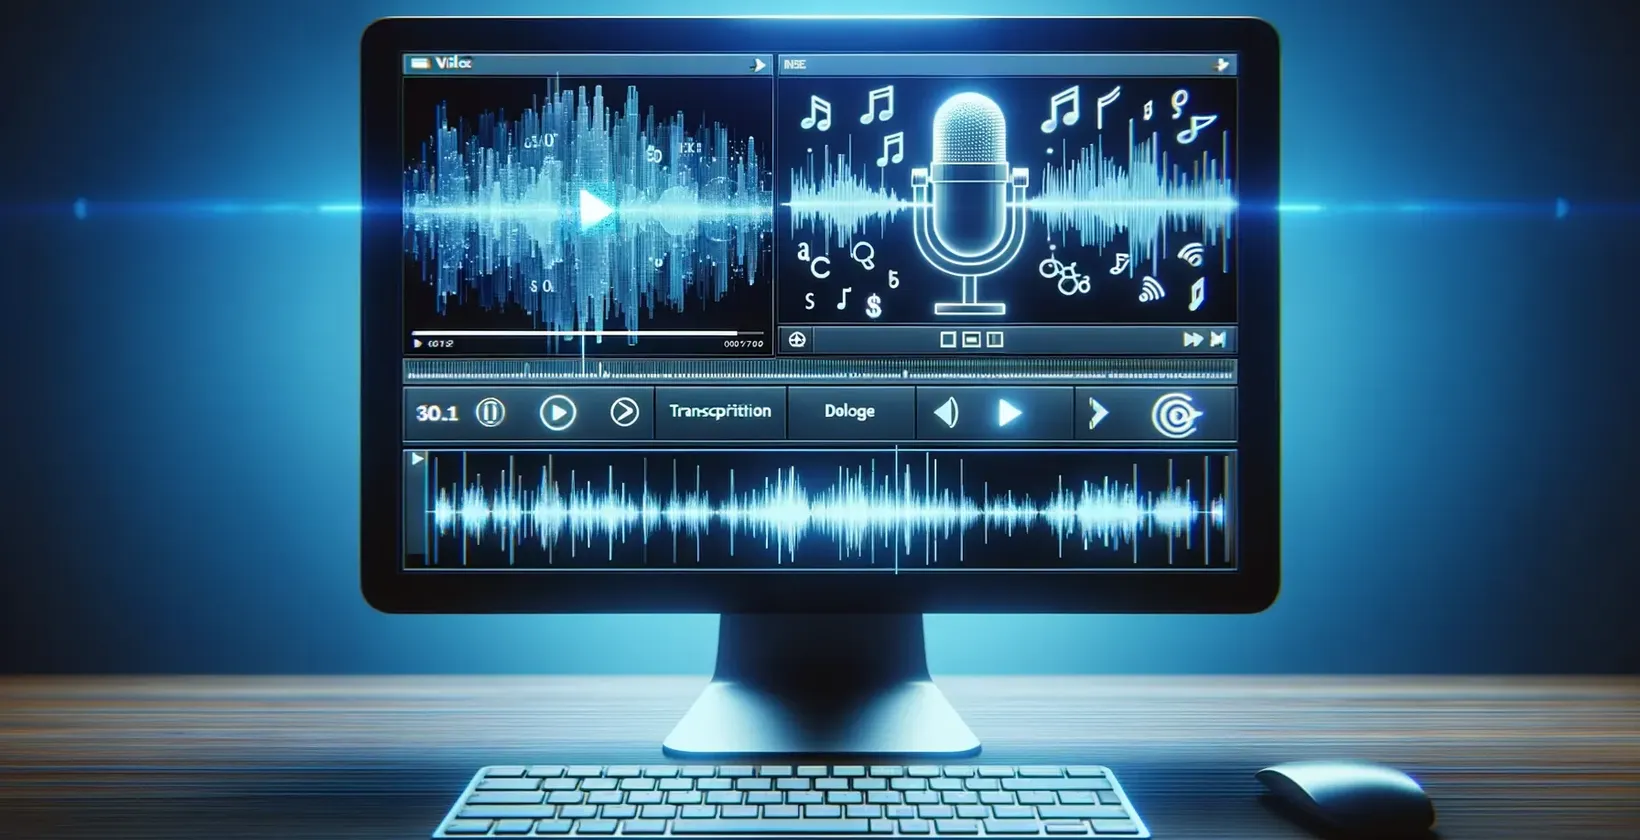 Una pantalla de ordenador que muestra notas musicales y un micrófono, utilizados para la transcripción de vídeo a texto.